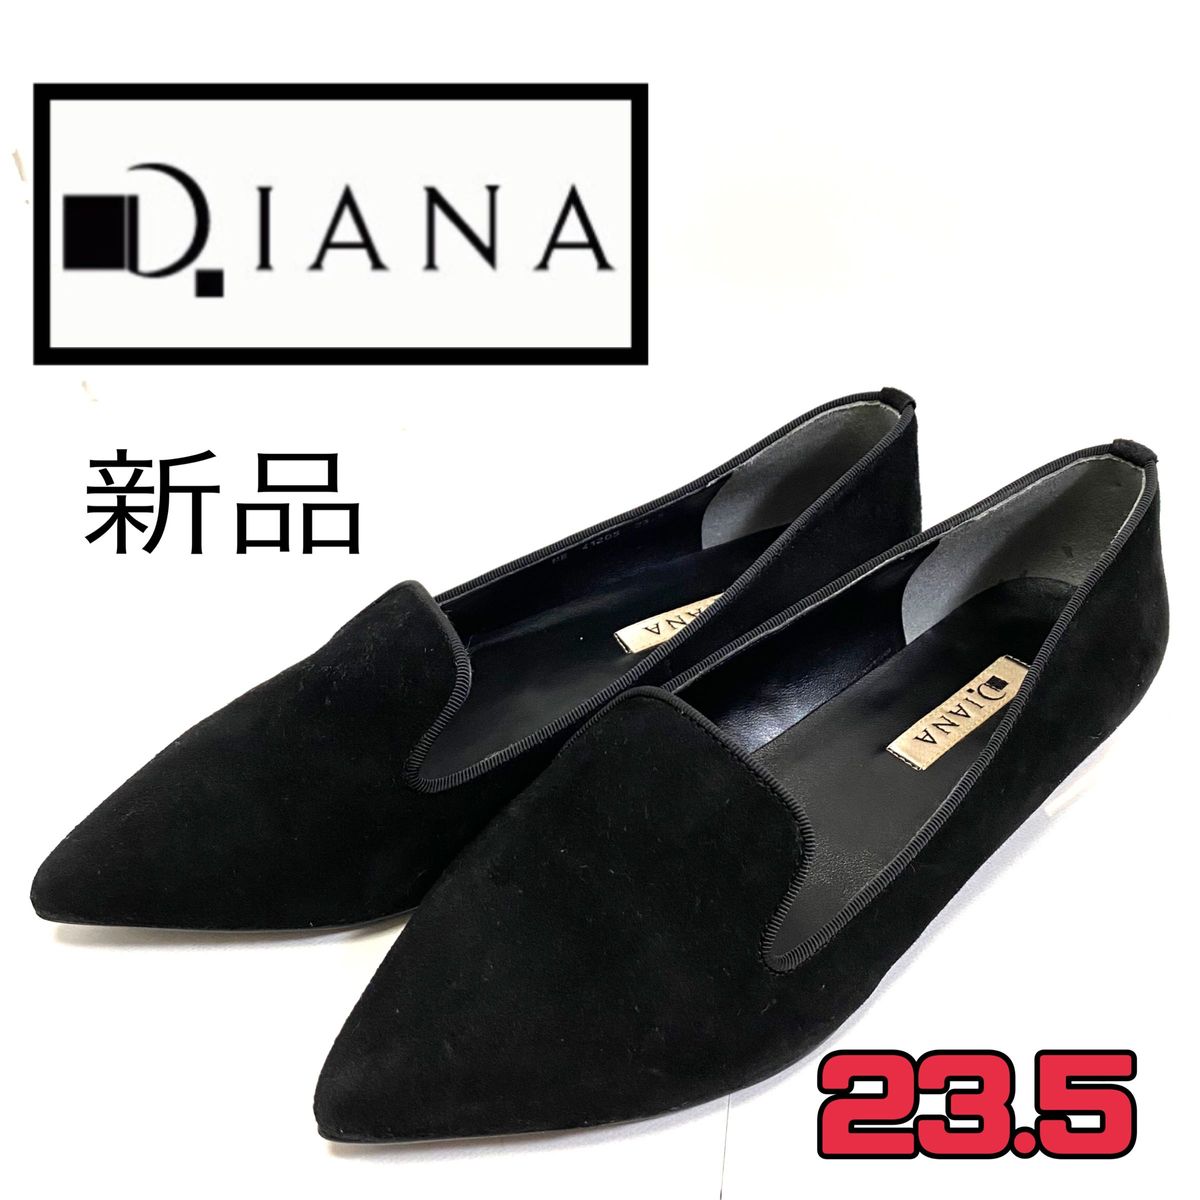 ダイアナ DIANA 23 5 フラットシューズ 黒 ブラック レディース